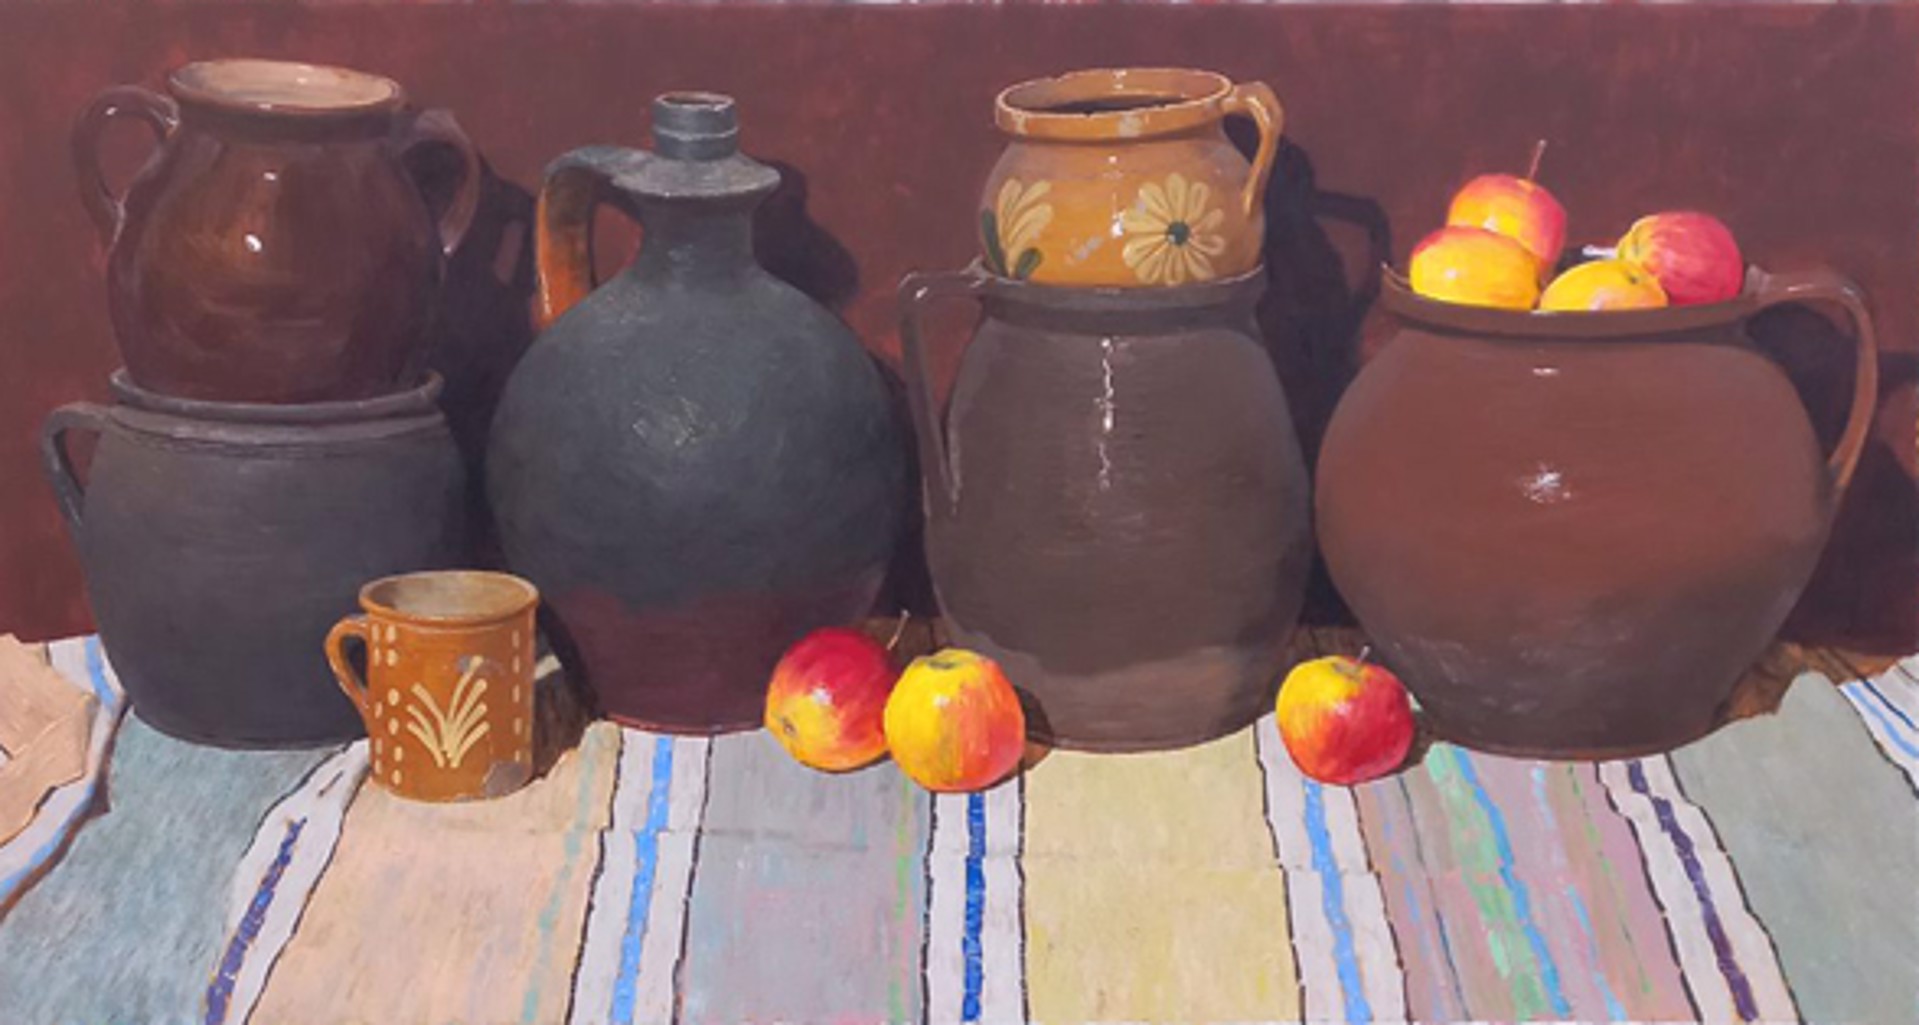 Ceramics and Apples by Vladimir Kovalov